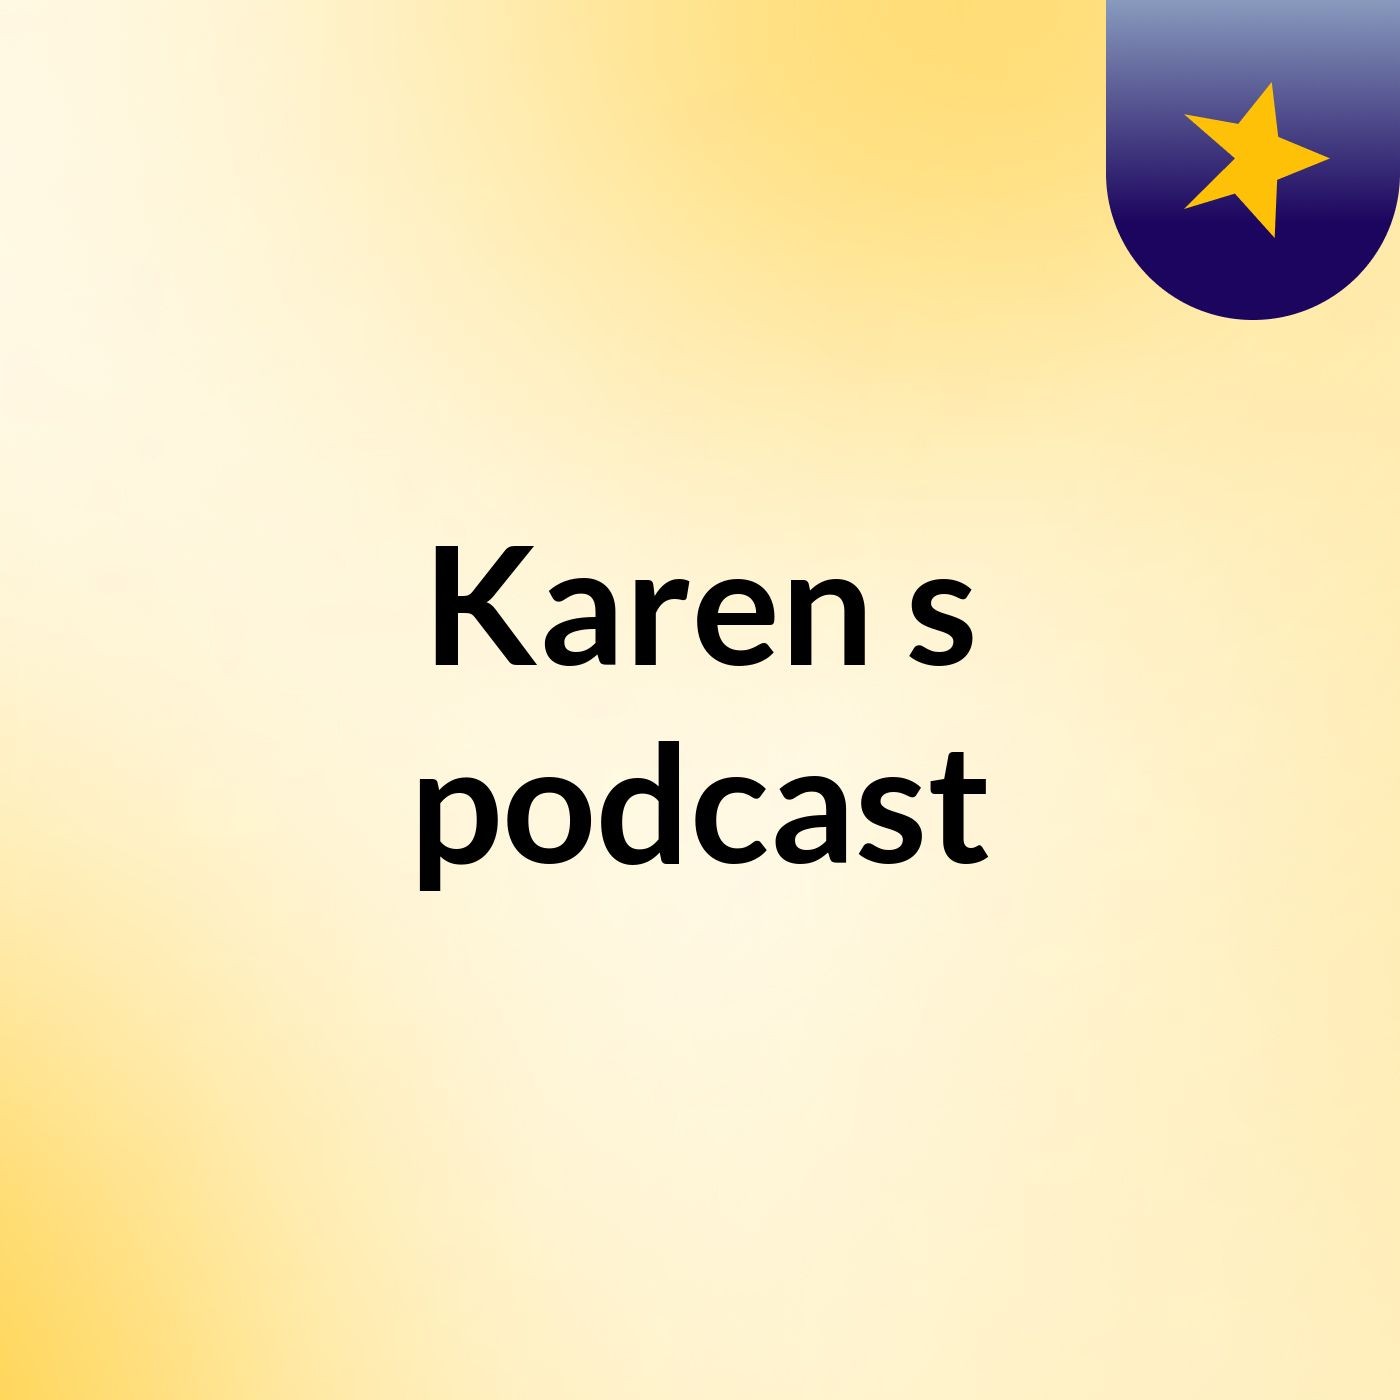 Karen's podcast